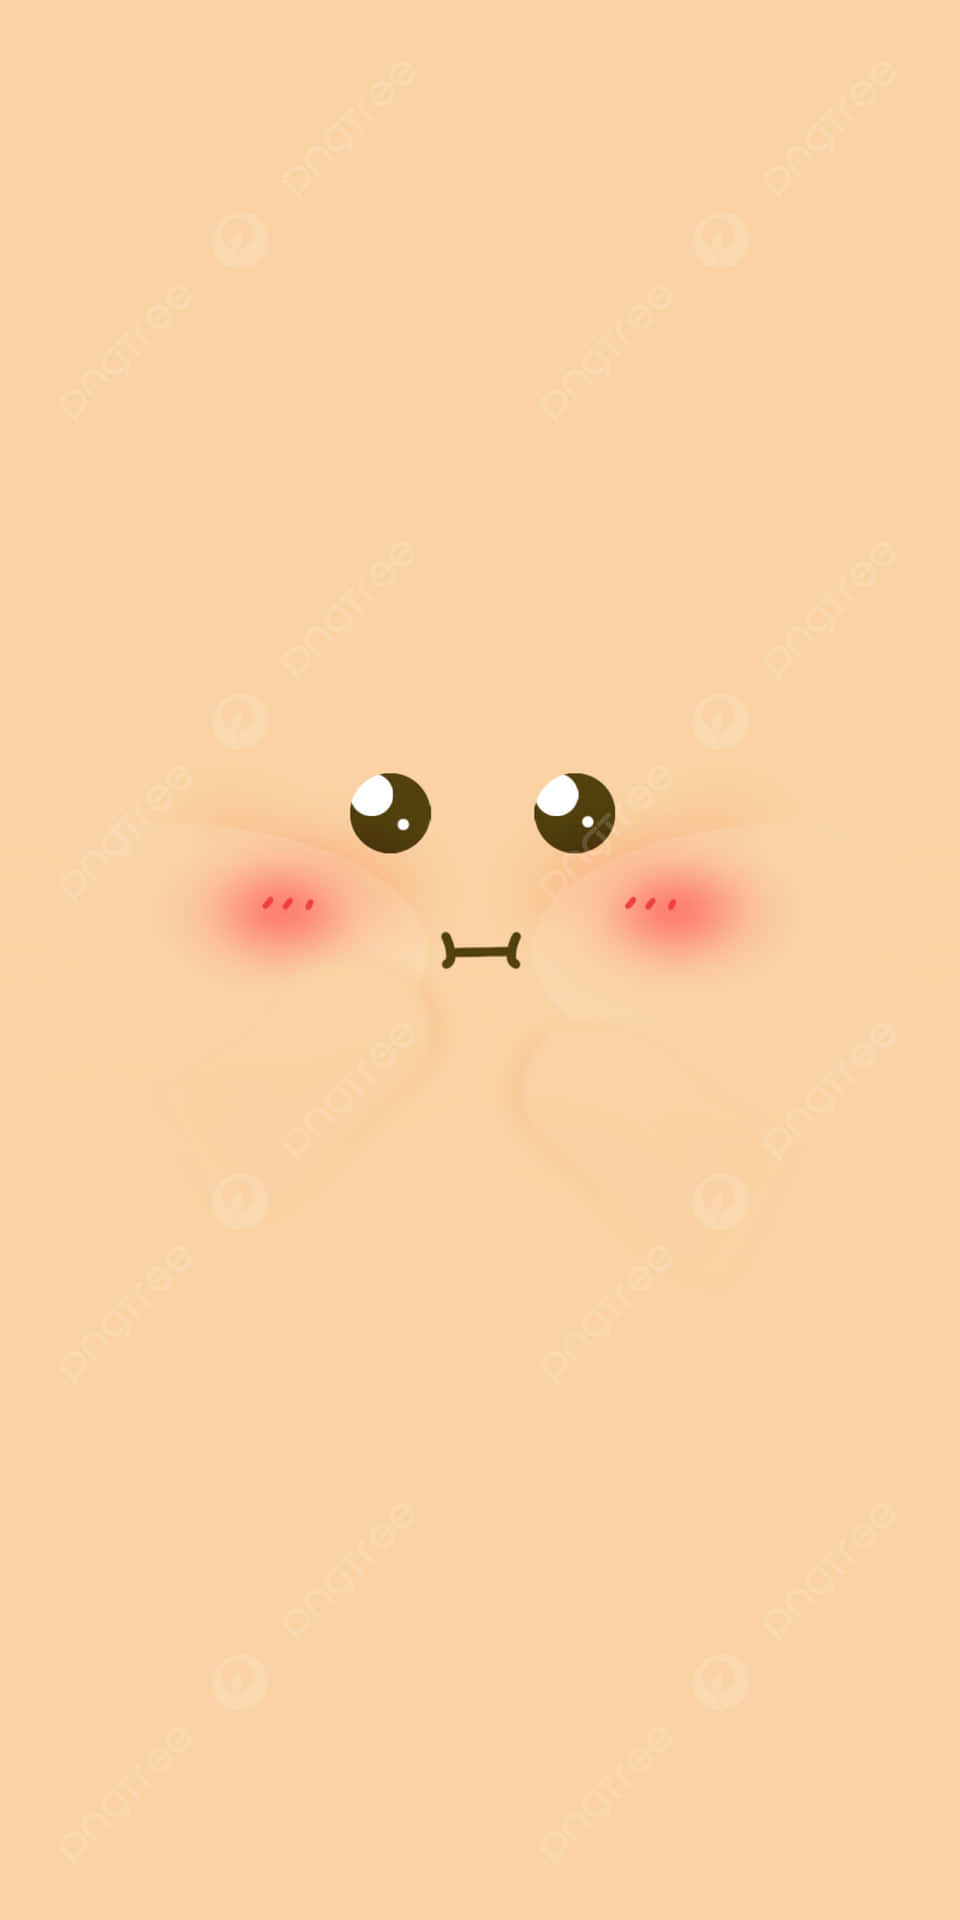 En sød ansigt med røde øjne og en lyserød næse. Wallpaper